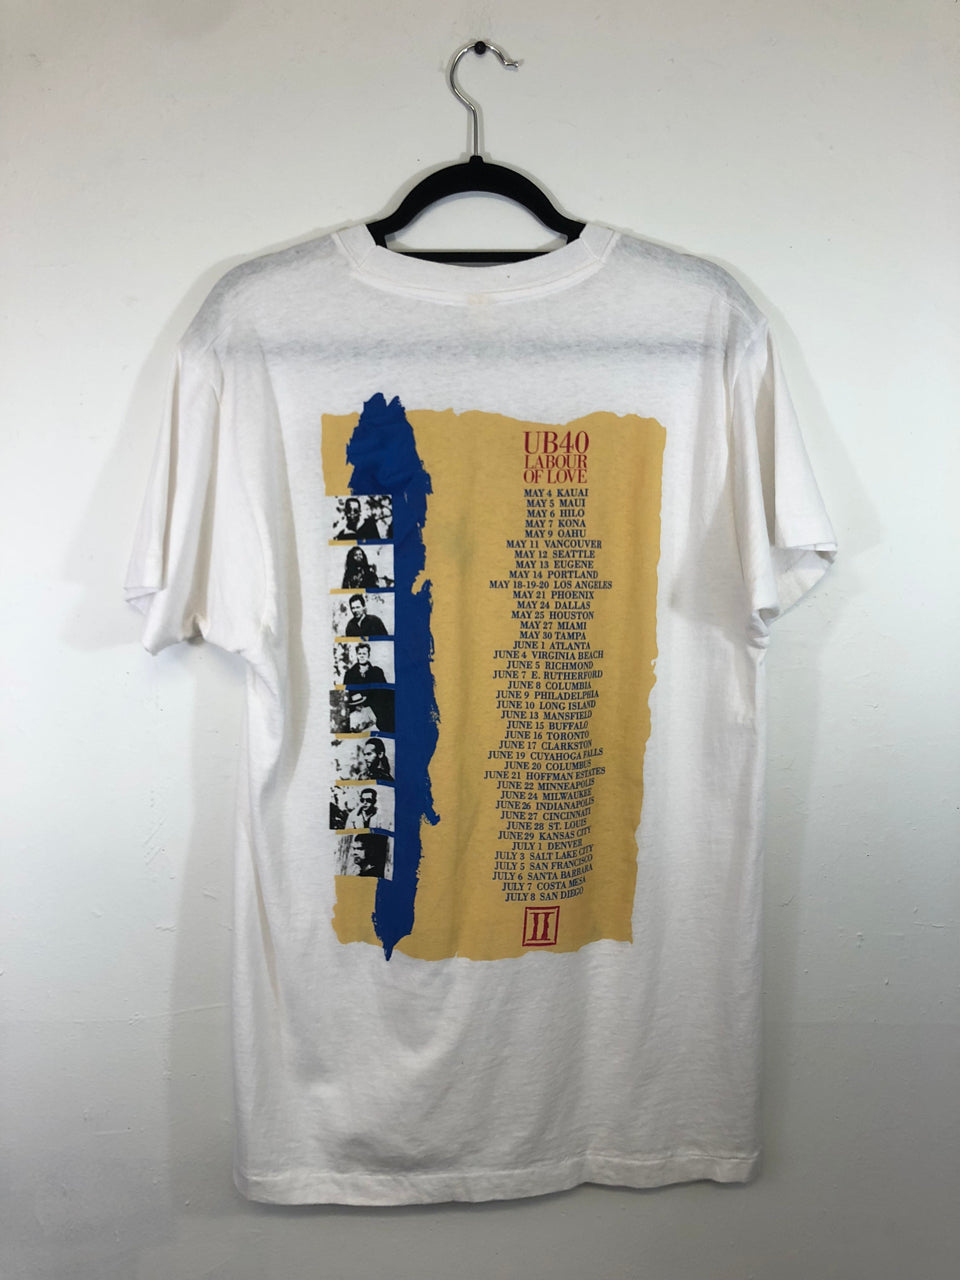 UB40 Labour of Love Tour 1990 T-Shirt